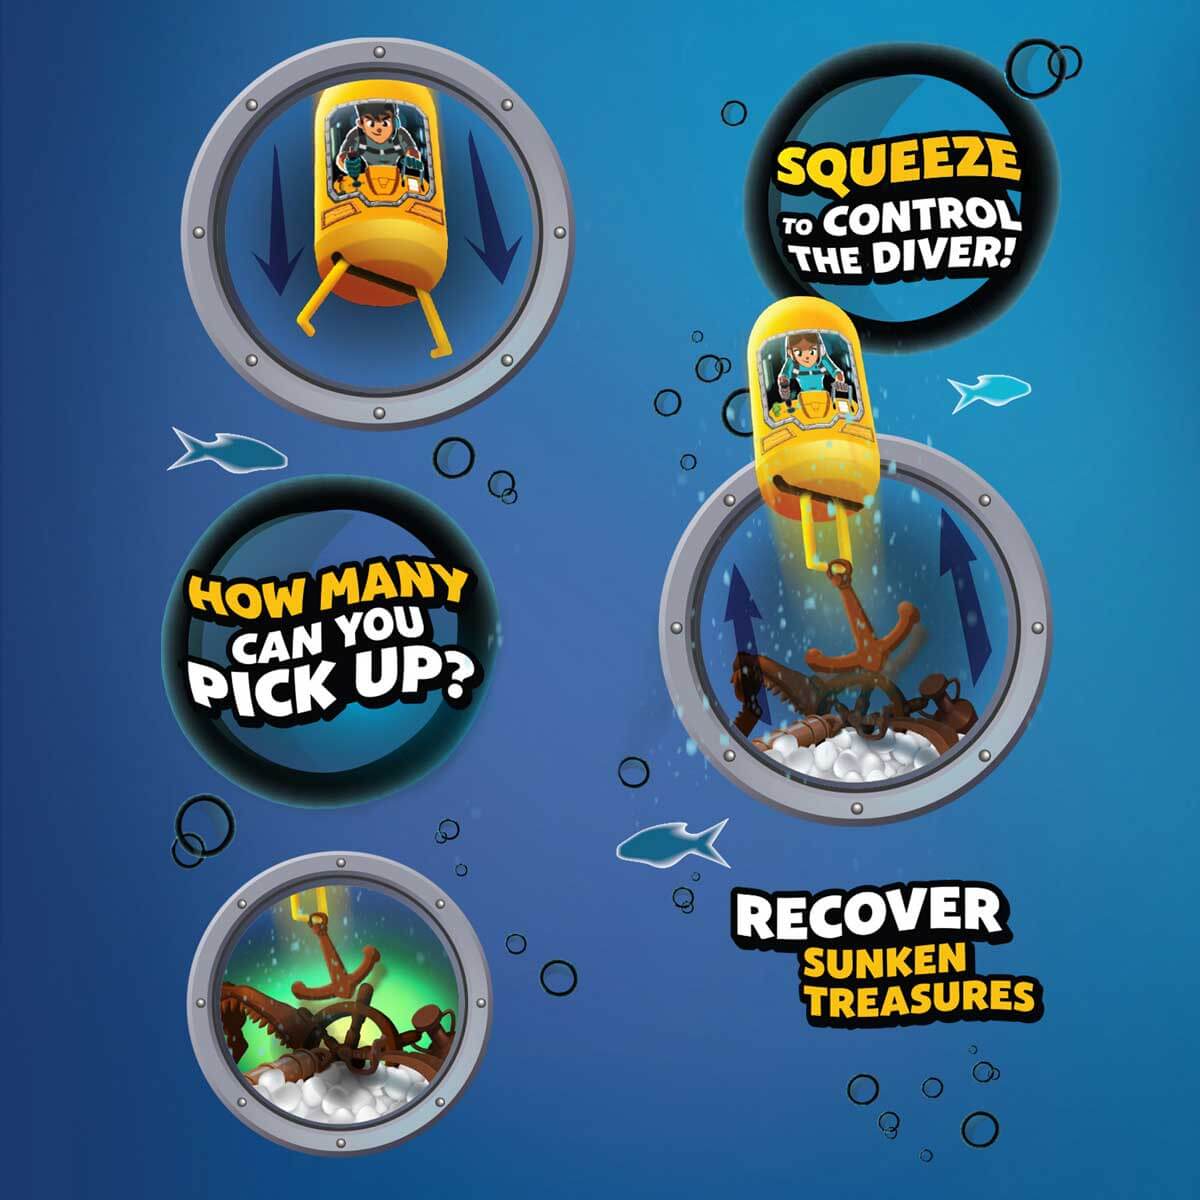 Treasure Diver Game